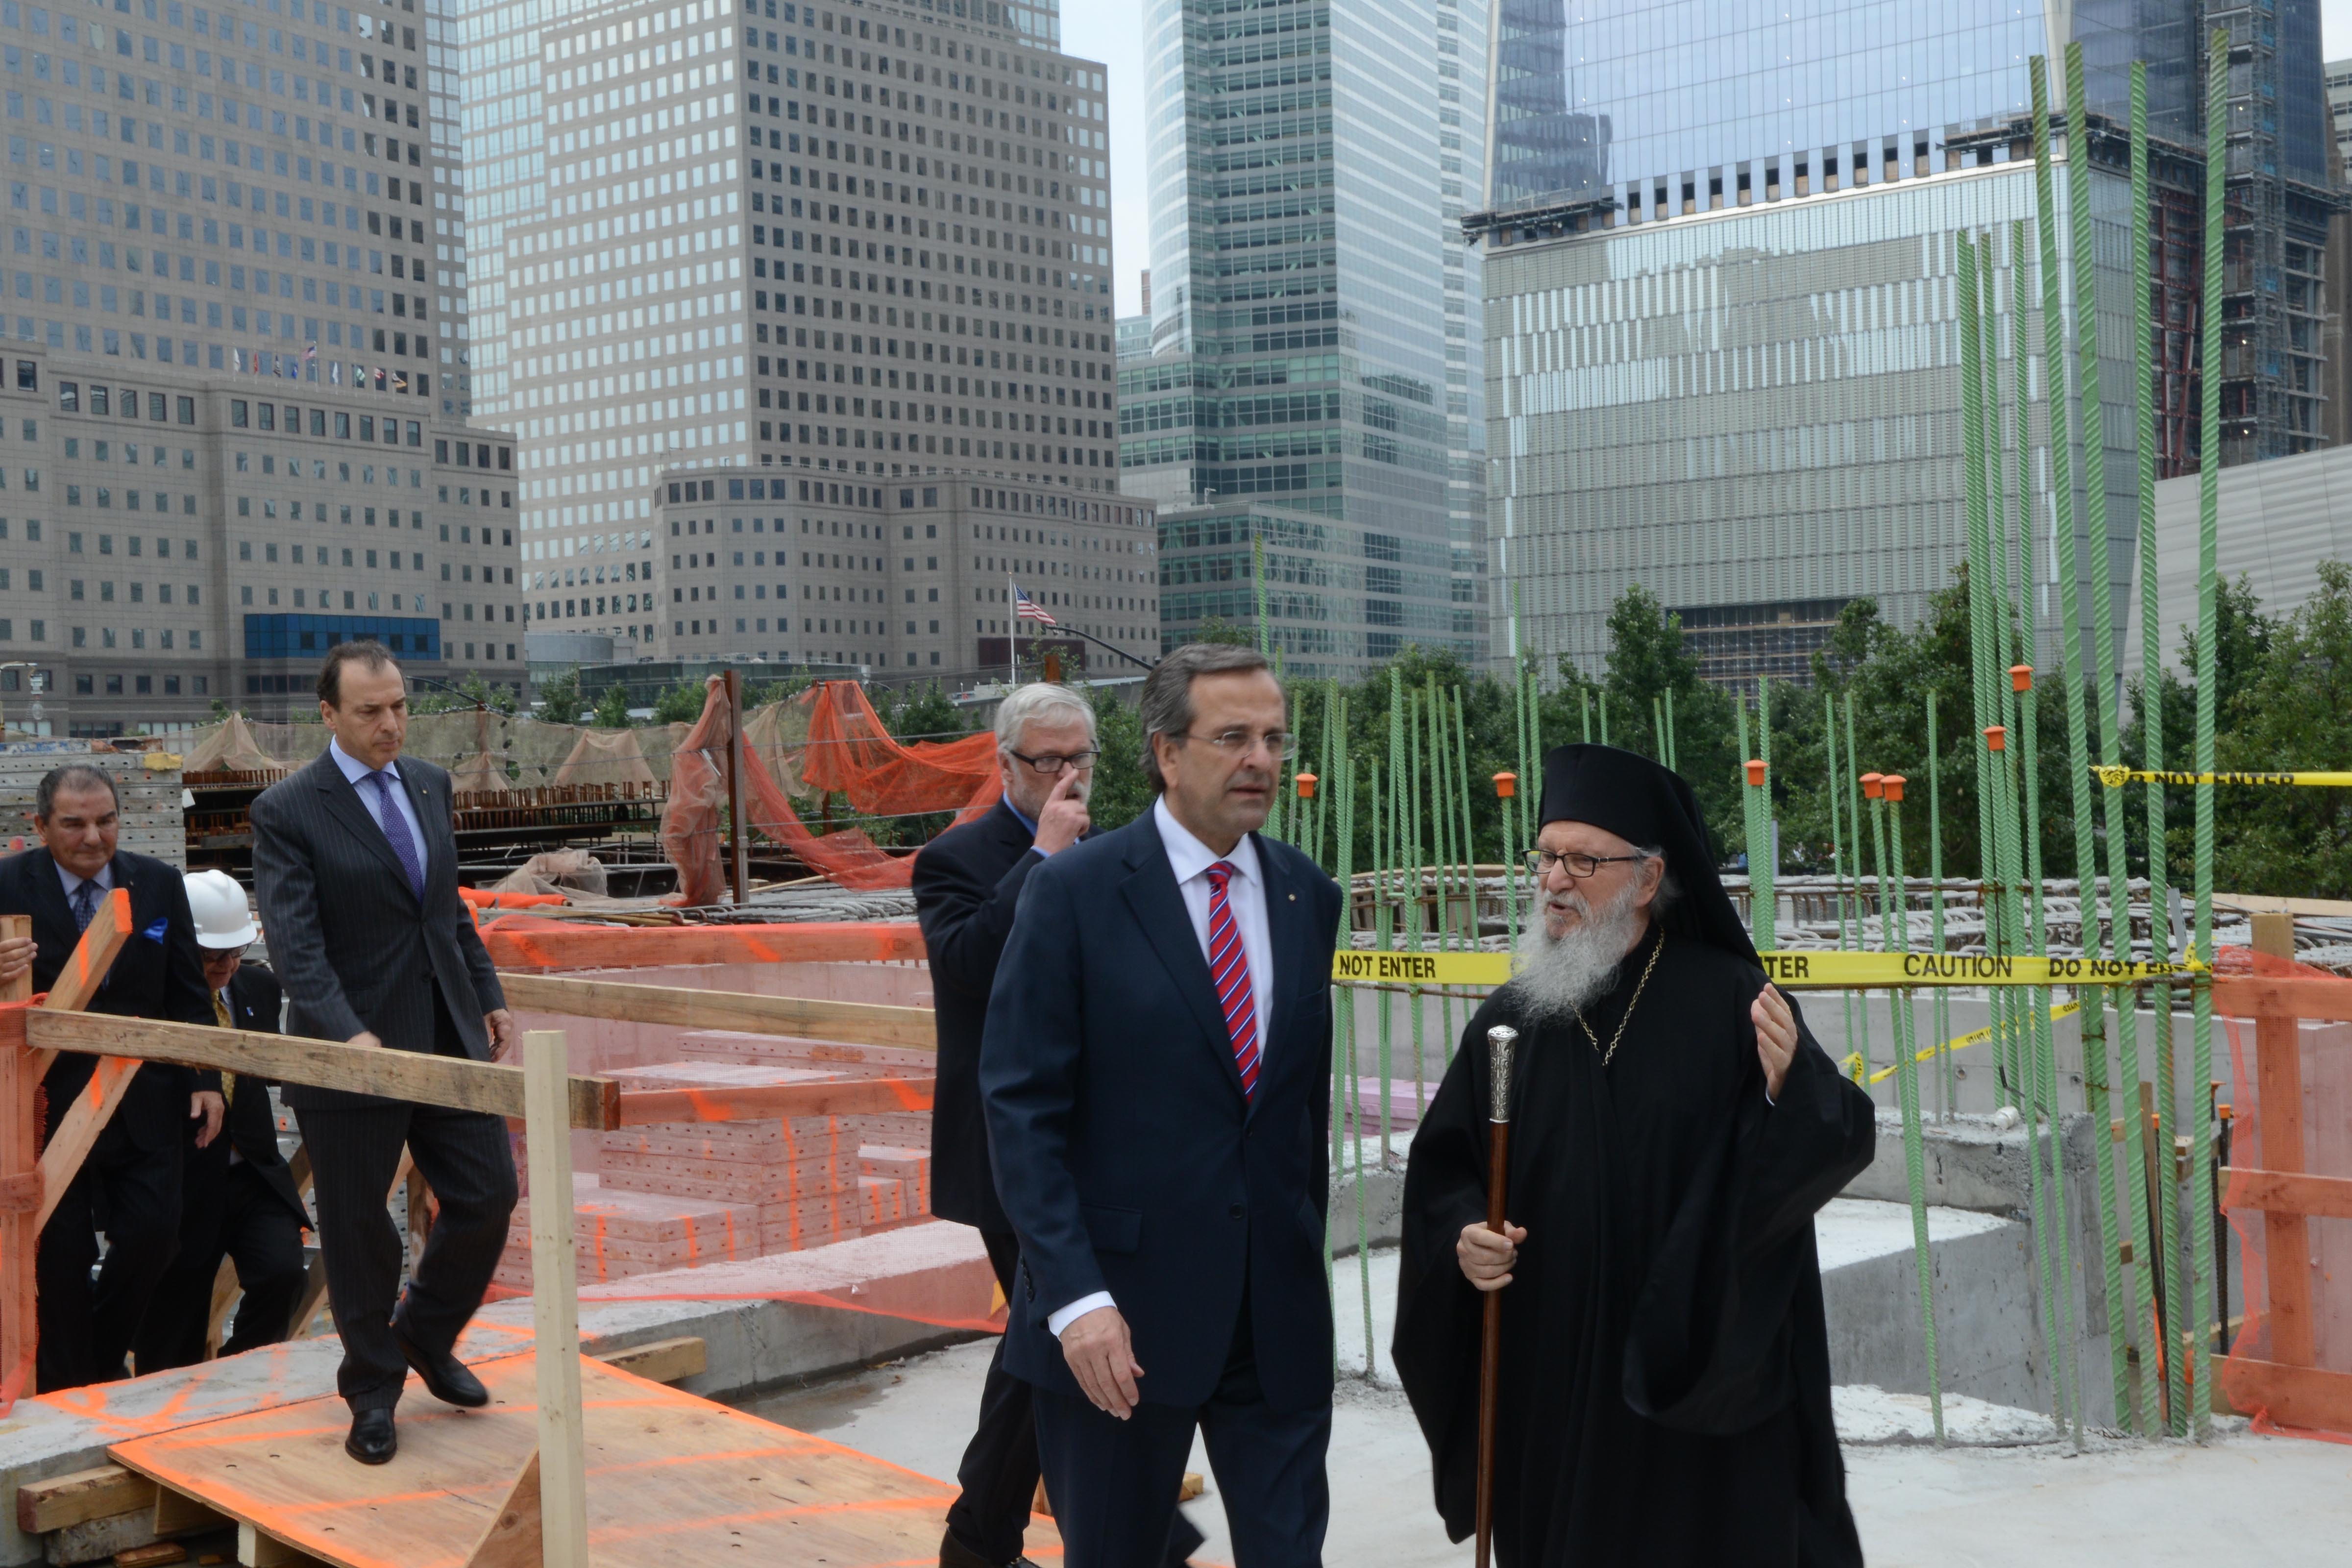 Ο Αρχιεπίσκοπος Αμερικής ξενάγησε τον πρωθυπουργό στο σημείο και του μίλησε για τα έργα ανέγερσης του ναού του Αγίου Νικολάου - ΦΩΤΟΓΡΑΦΙΑ EUROKINISSI